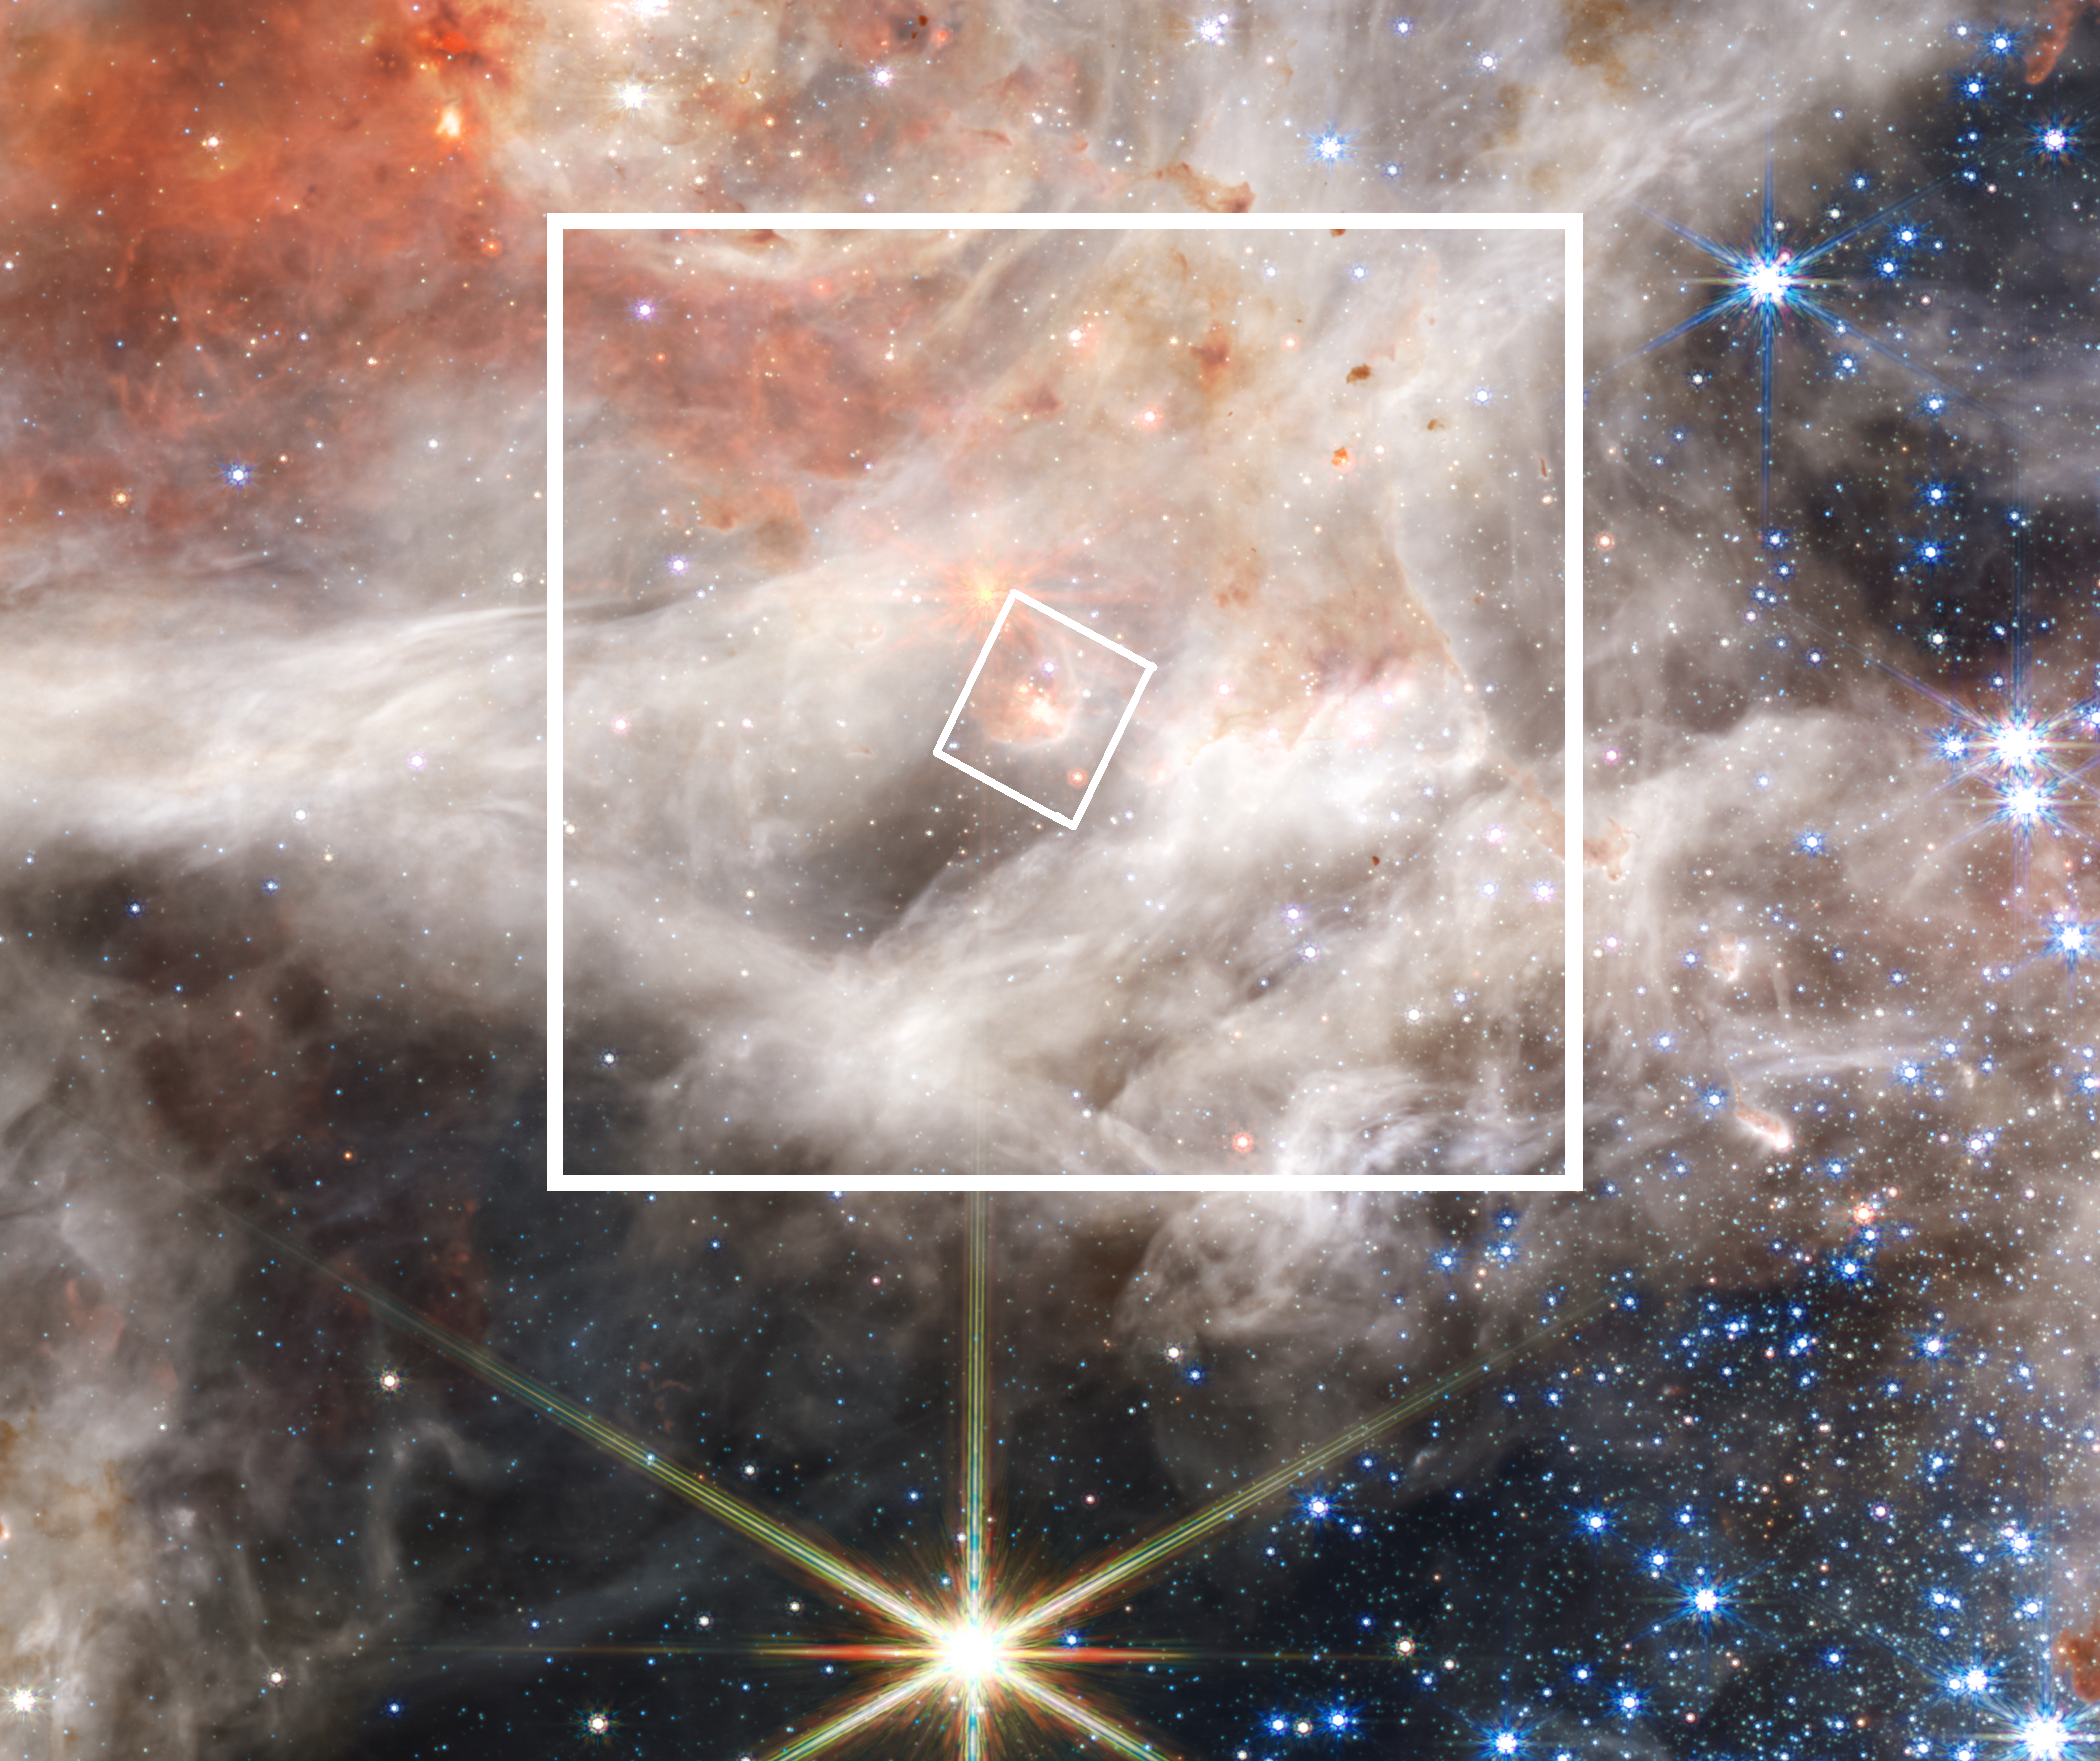 Przycięty fragment obrazu Mgławicy Tarantula w bliskiej podczerwieni, który zarejestrowała kamera NIRCam współpracująca z Kosmicznym Teleskopem Jamesa Webba. W mniejszym z dwóch kwadratów zakreślonym białą linią, zaznaczono orientacyjnie pole obserwacyjne 3”x3” spektrografu NIRSpec z protogwiazdą. Rezultat obserwacji spektroskopowych pokazano na ilustracji tytułowej. Oprac na podstawie : NASA, ESA, CSA, STScI, Webb ERO Production Team